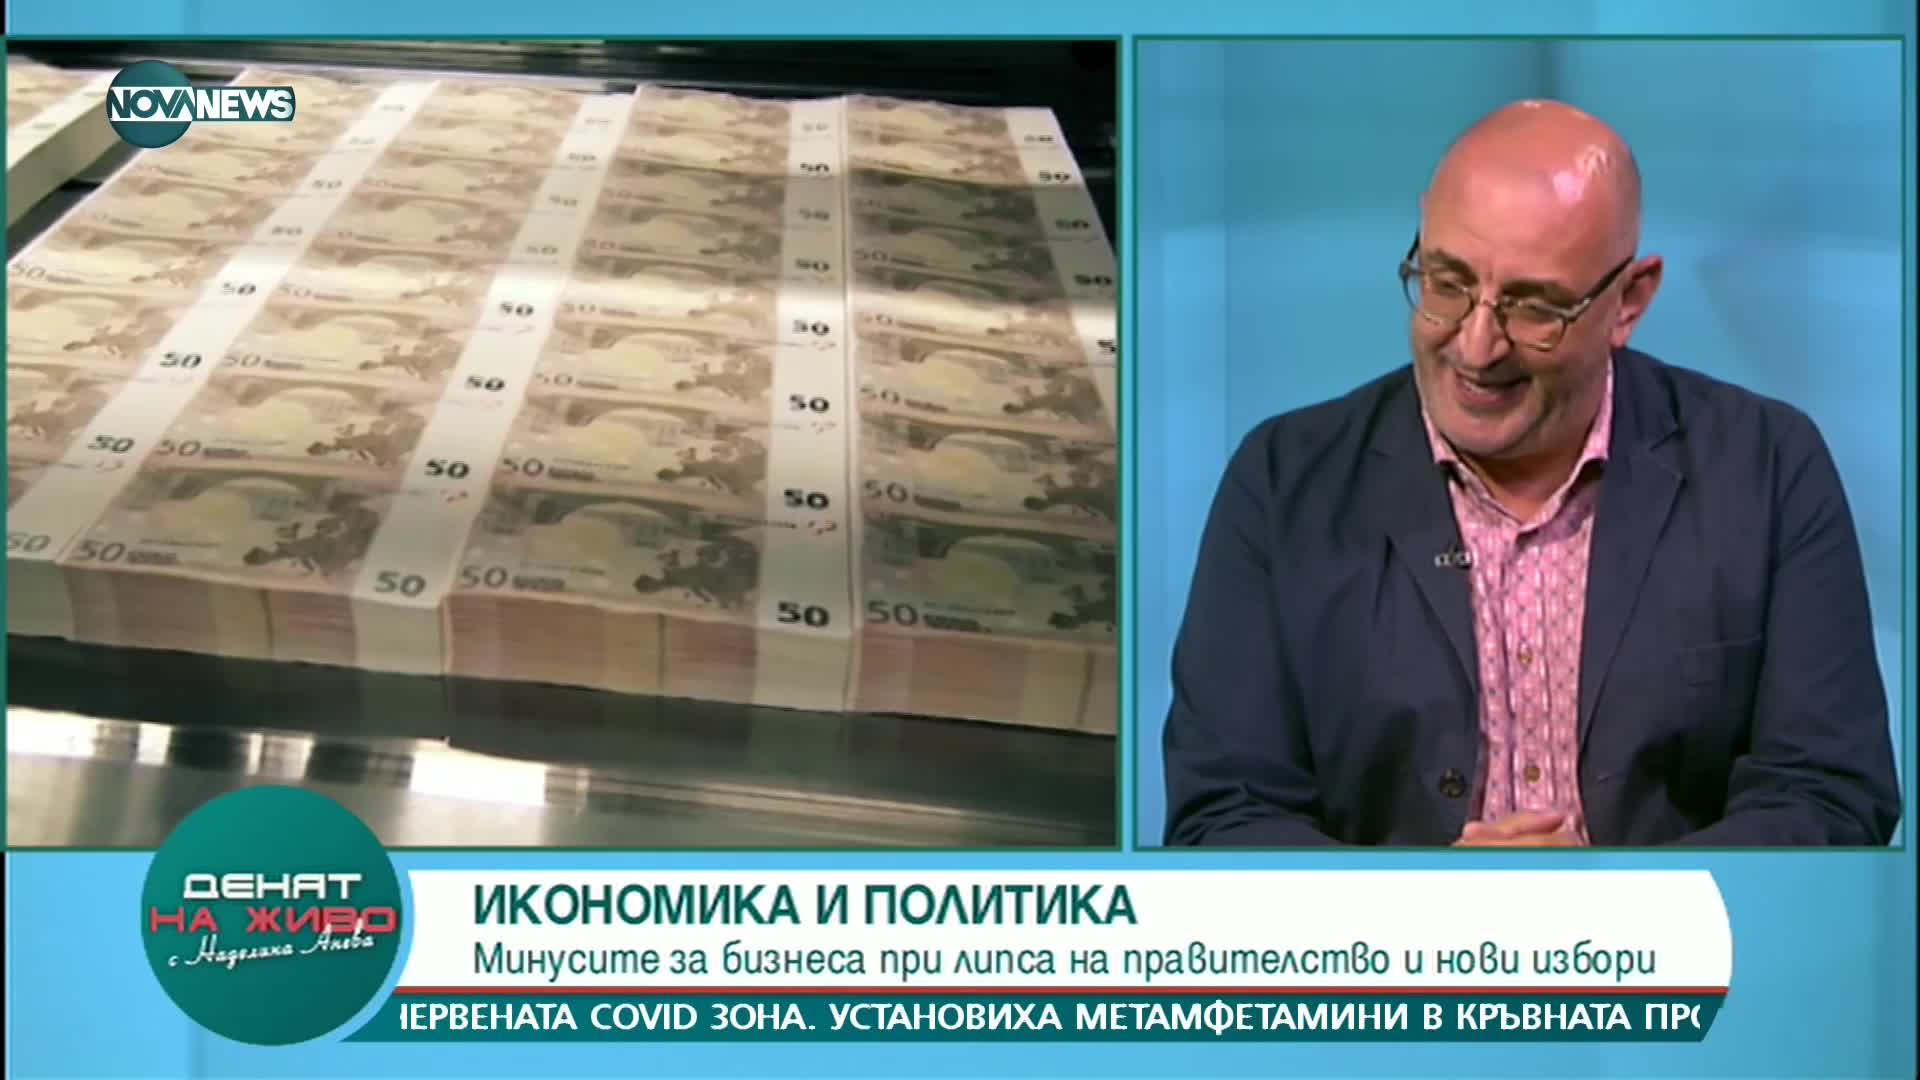 Керемедчиев: През есента ще има нова актуализация на бюджета